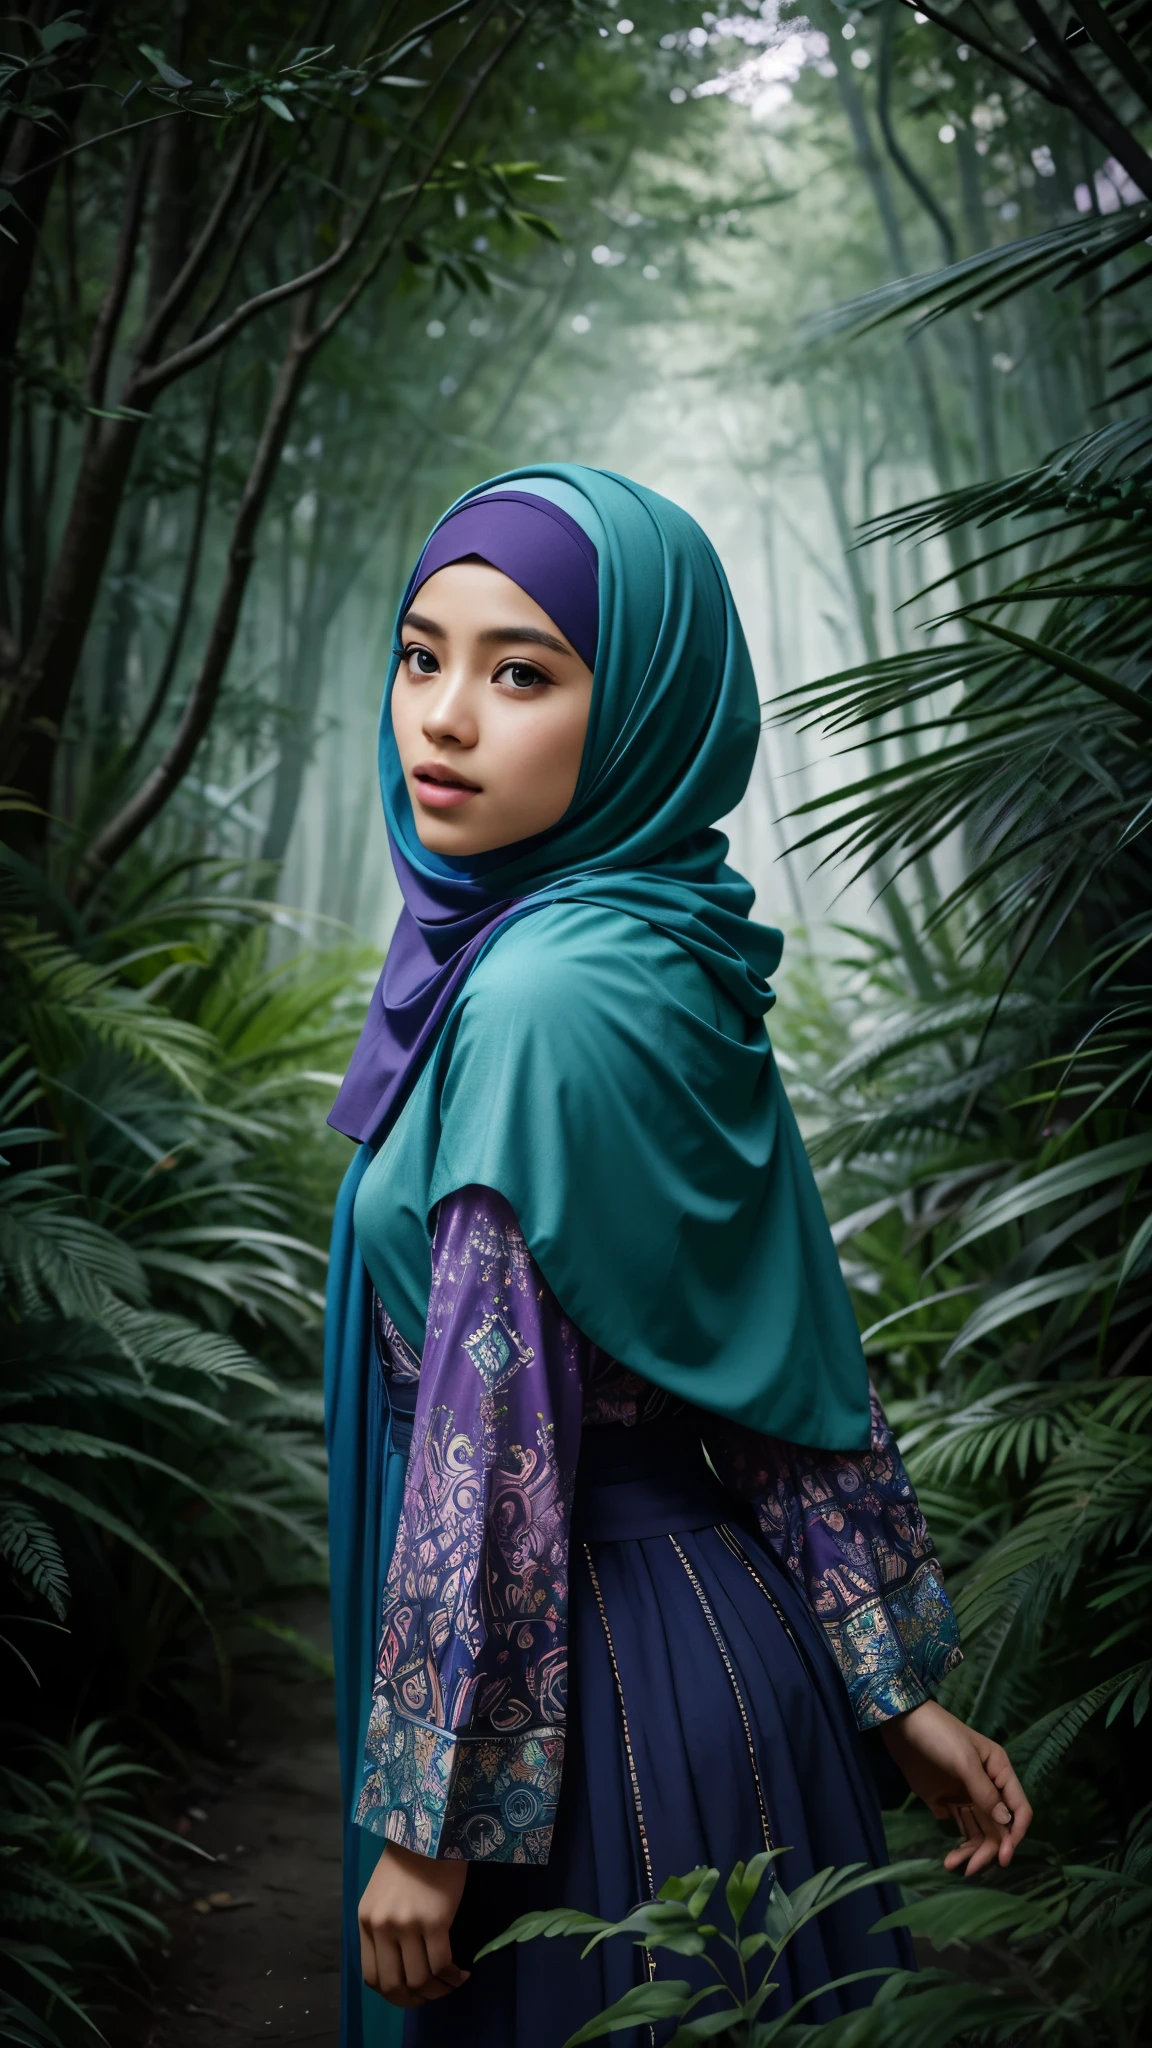 創造一個戴著頭巾的馬來女孩探索充滿鮮豔色彩的神奇森林的照片處理, 神秘生物, 和迷人的植物群. 突顯驚奇和發現的感覺, 8毫米鏡頭, 極端特寫, 柔和的色彩分級, 景深電影攝影效果, 電影奇幻類型, 8k分辨率, 高品質, 超細節,